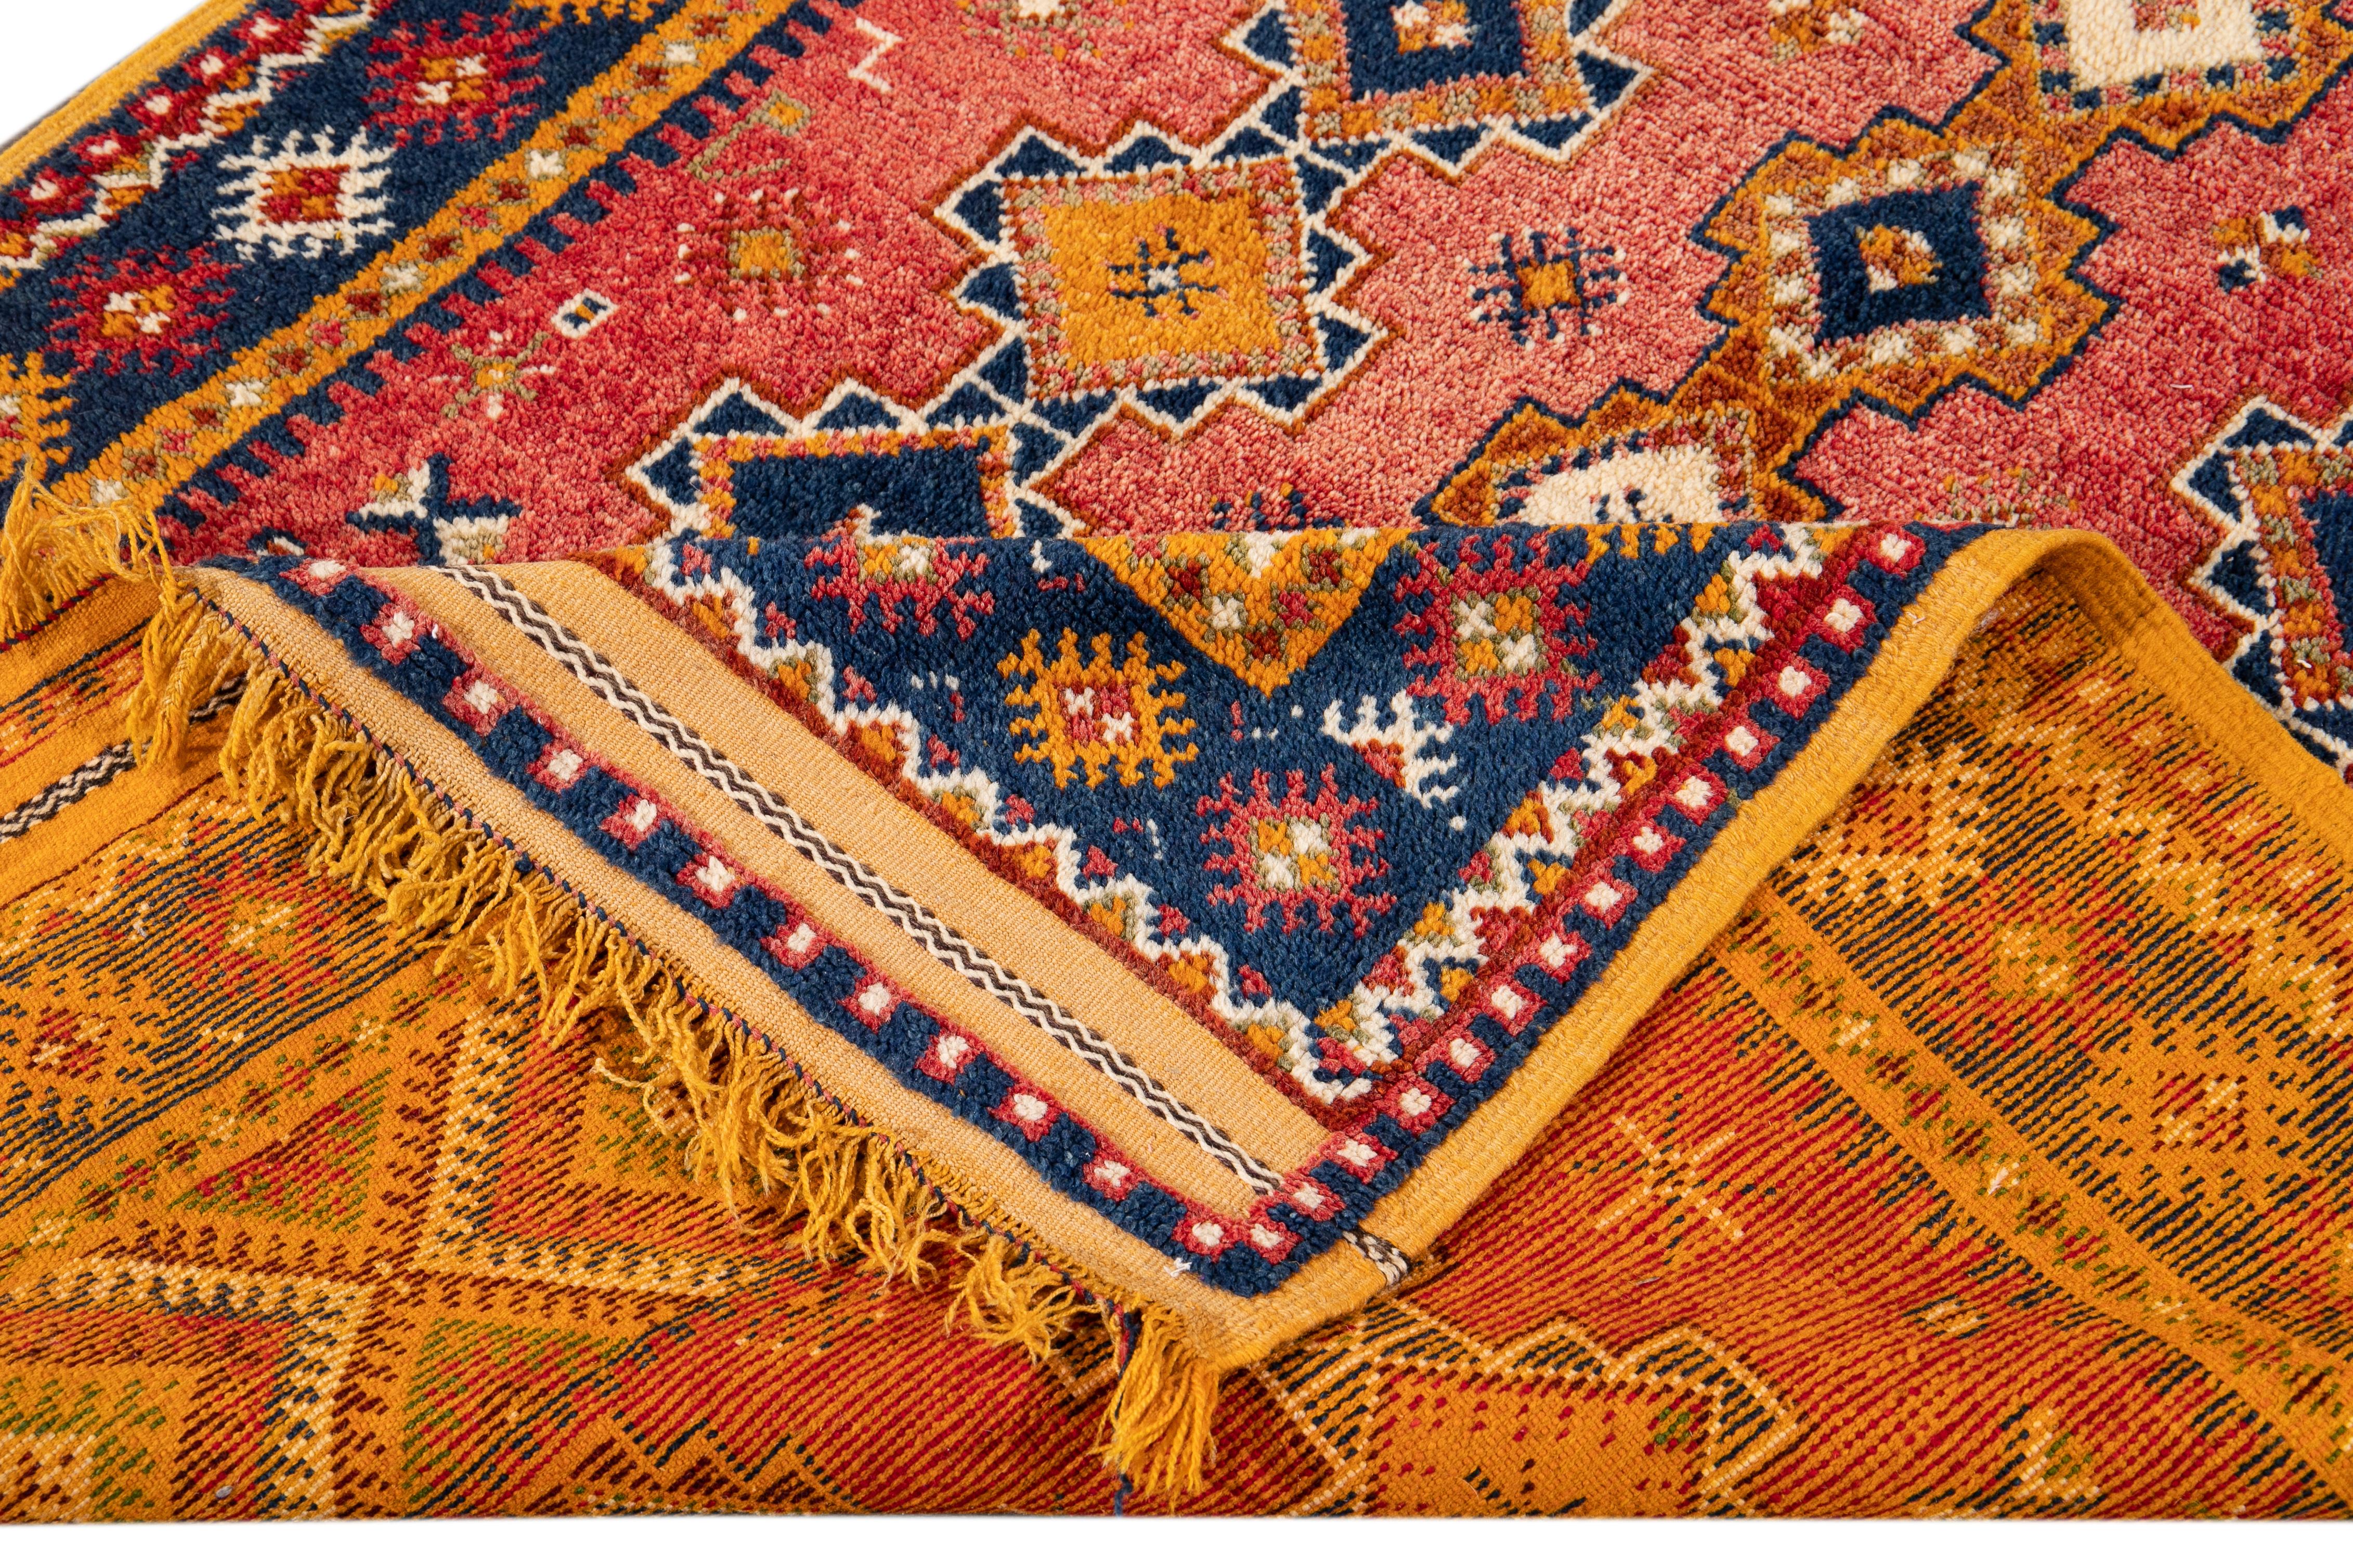 Schöner antiker marokkanischer Teppich mit blauer und gelber Doppelbordüre, rotem Feld und durchgehendem geometrischem Muster in Blau- und Orangetönen. 

Dieser Teppich misst 4'8